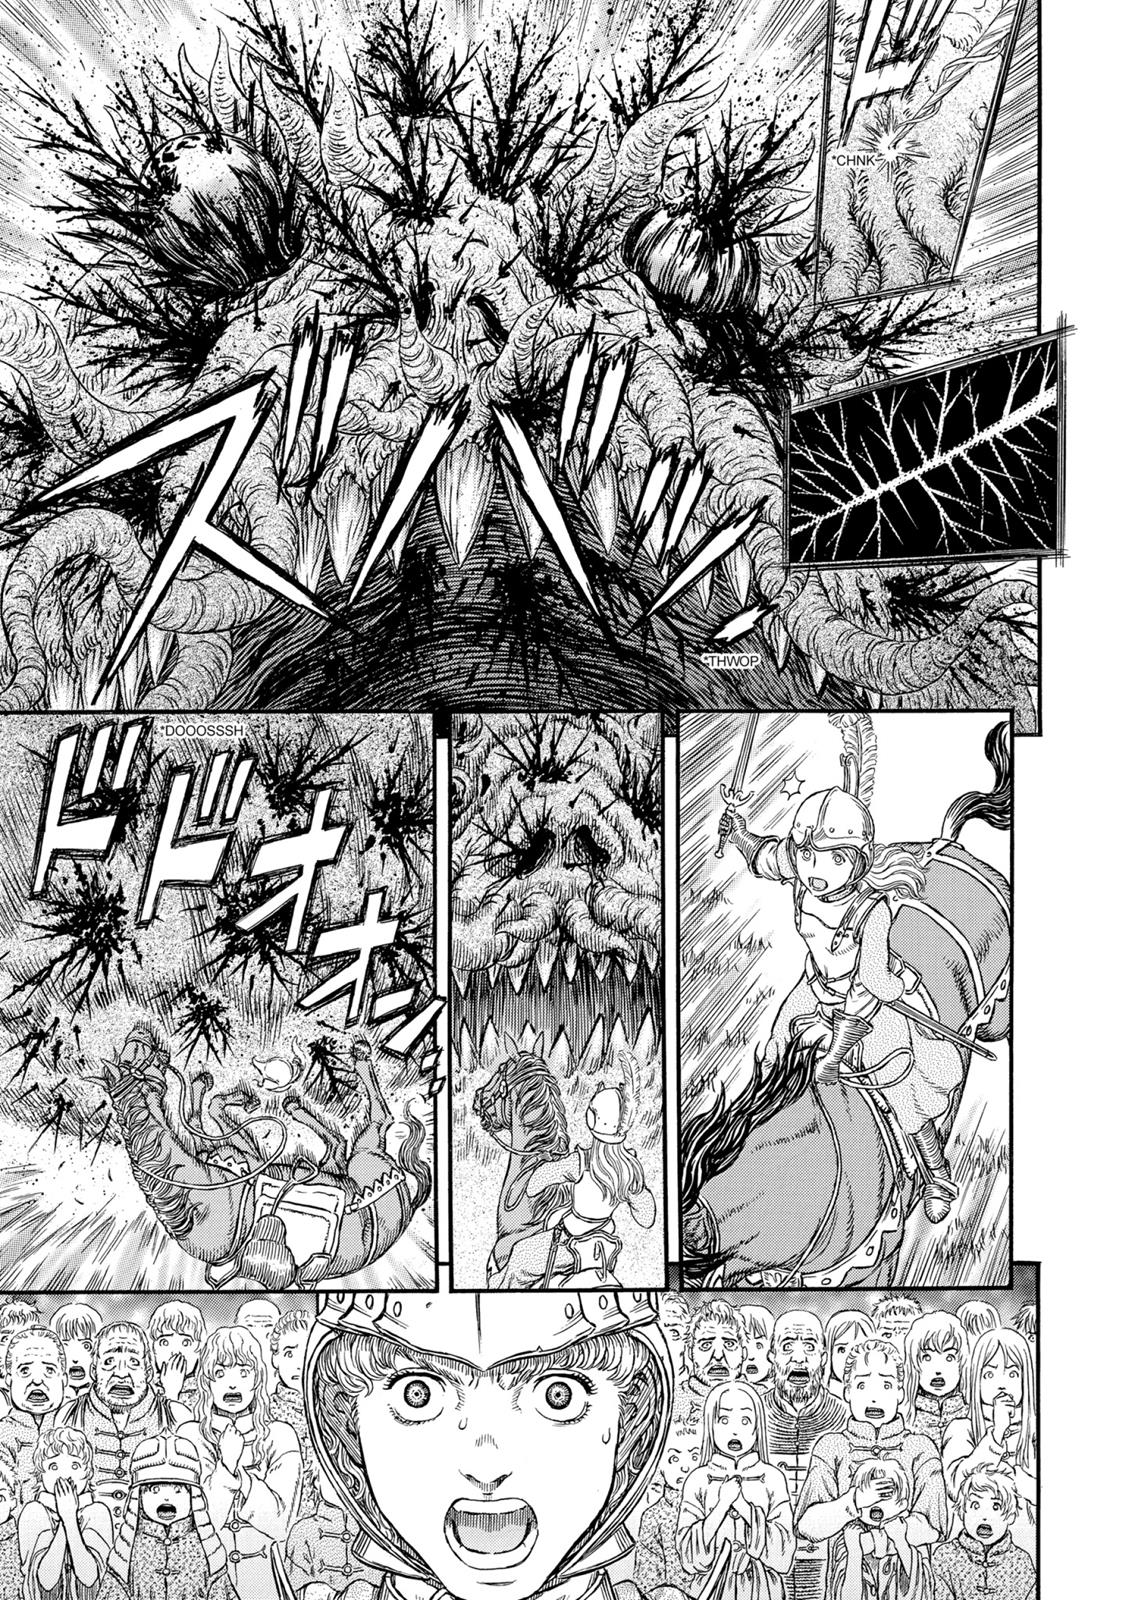 Berserk Manga Chapter 300 image 07